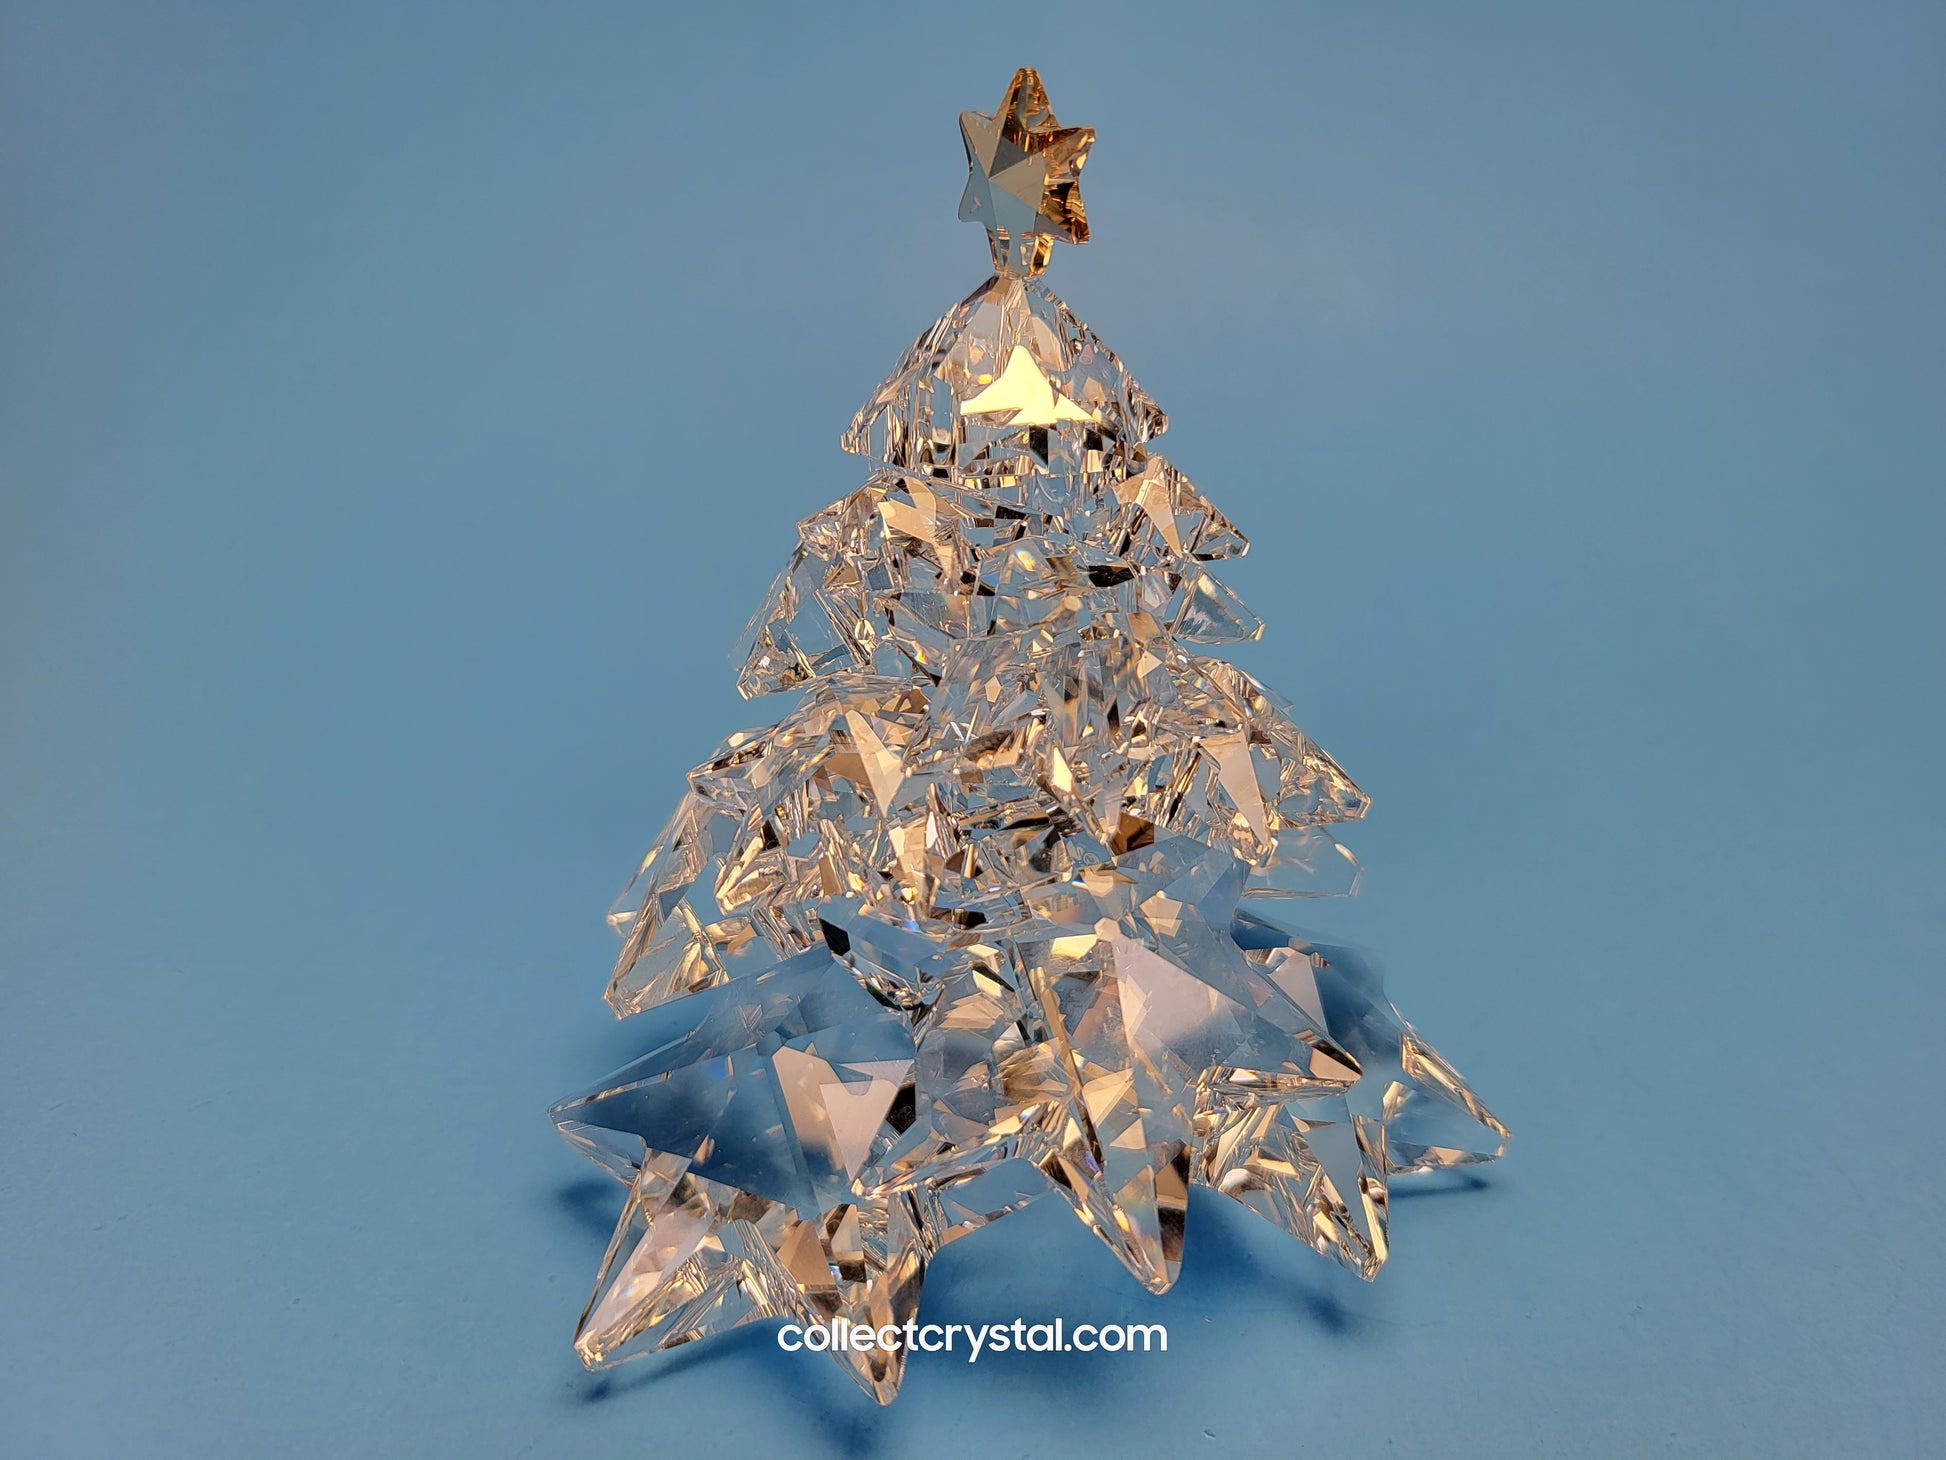 CHRISTMAS TREE SHINING STAR 1139998 – Collect Crystal